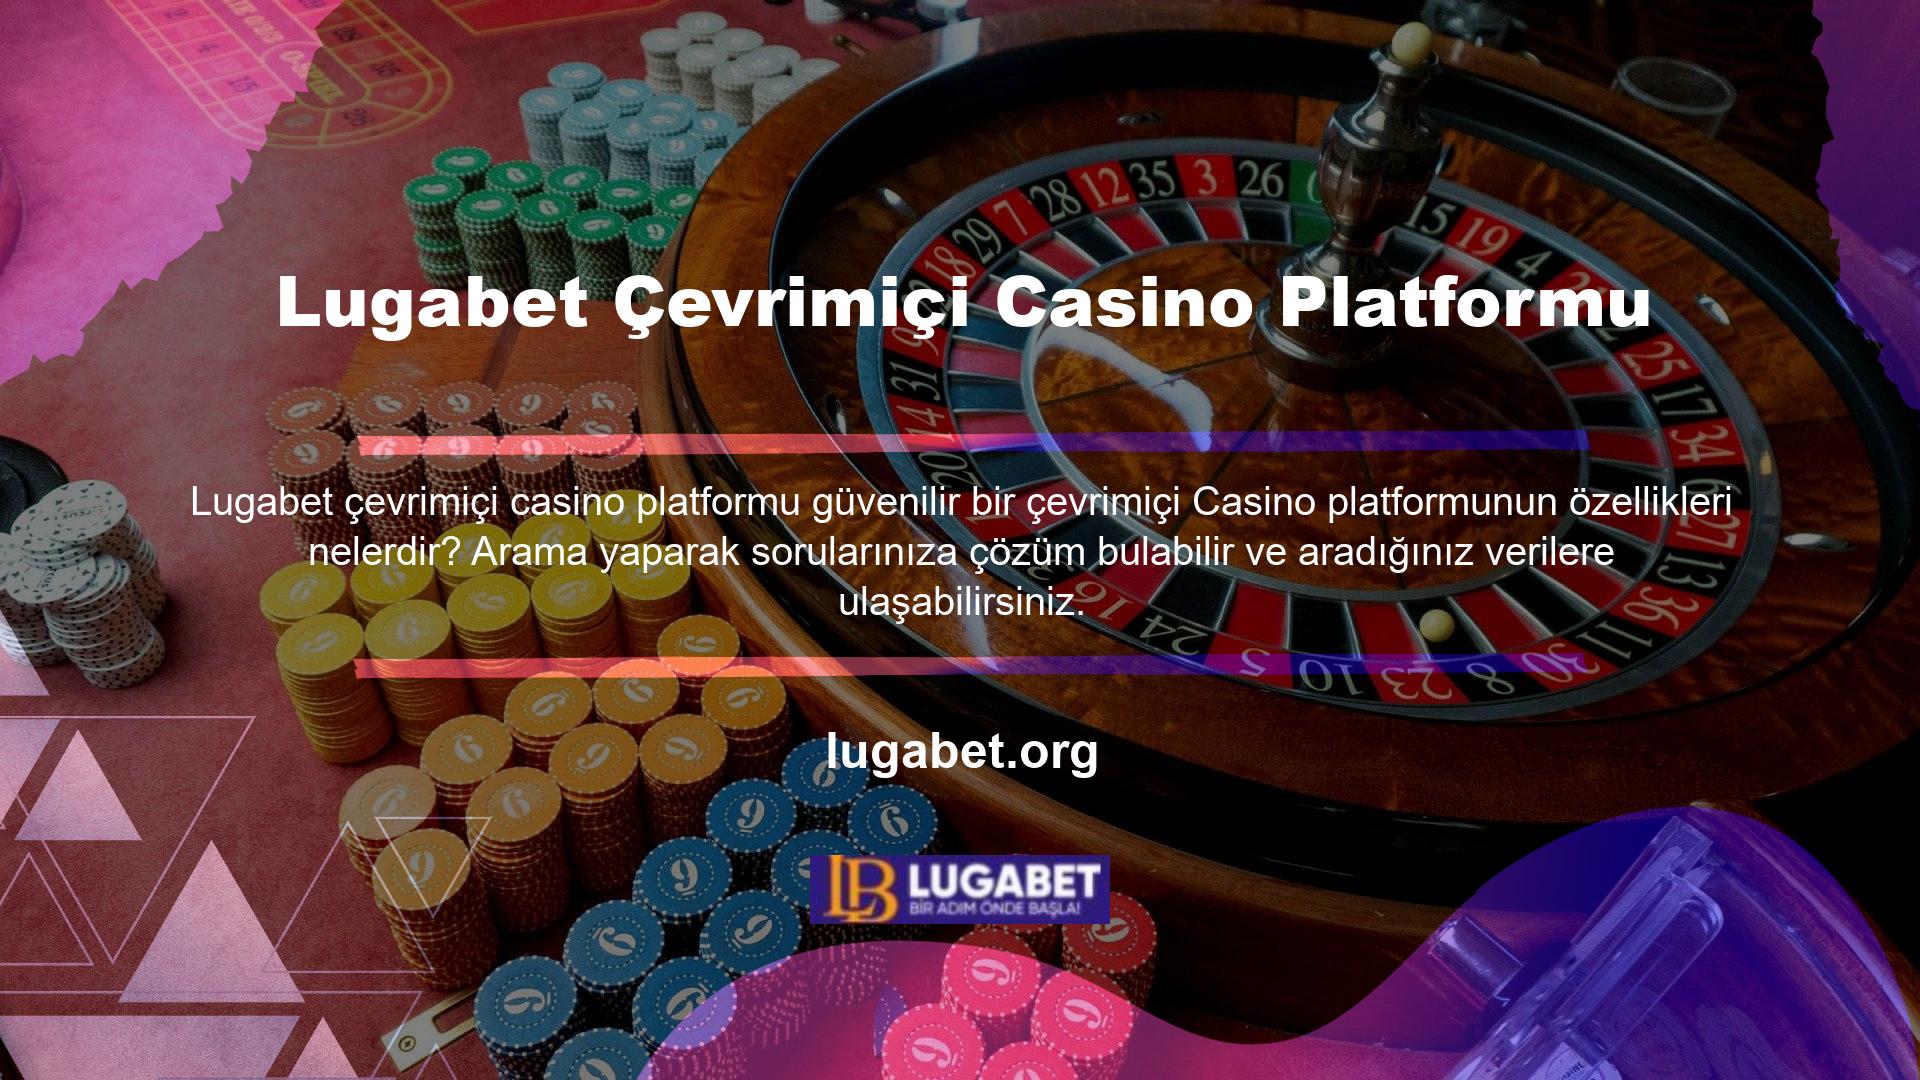 Güvenilir bir çevrimiçi Casino platformunun ortak özelliklerini anlamak